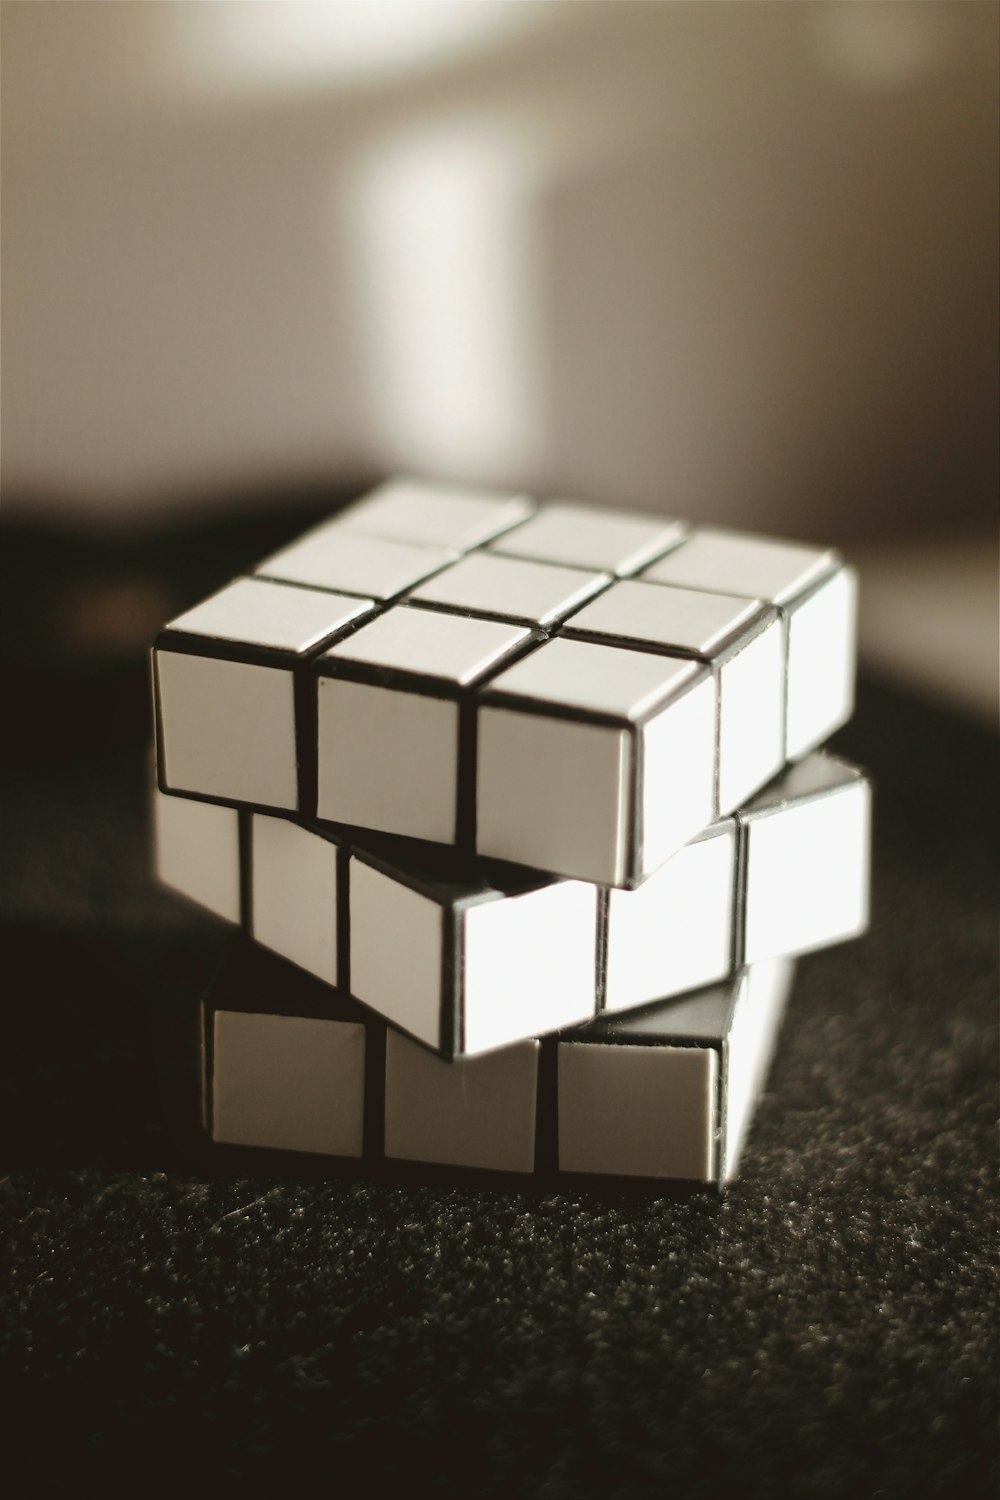 Rubiks cube blanc et noir 3 x 3